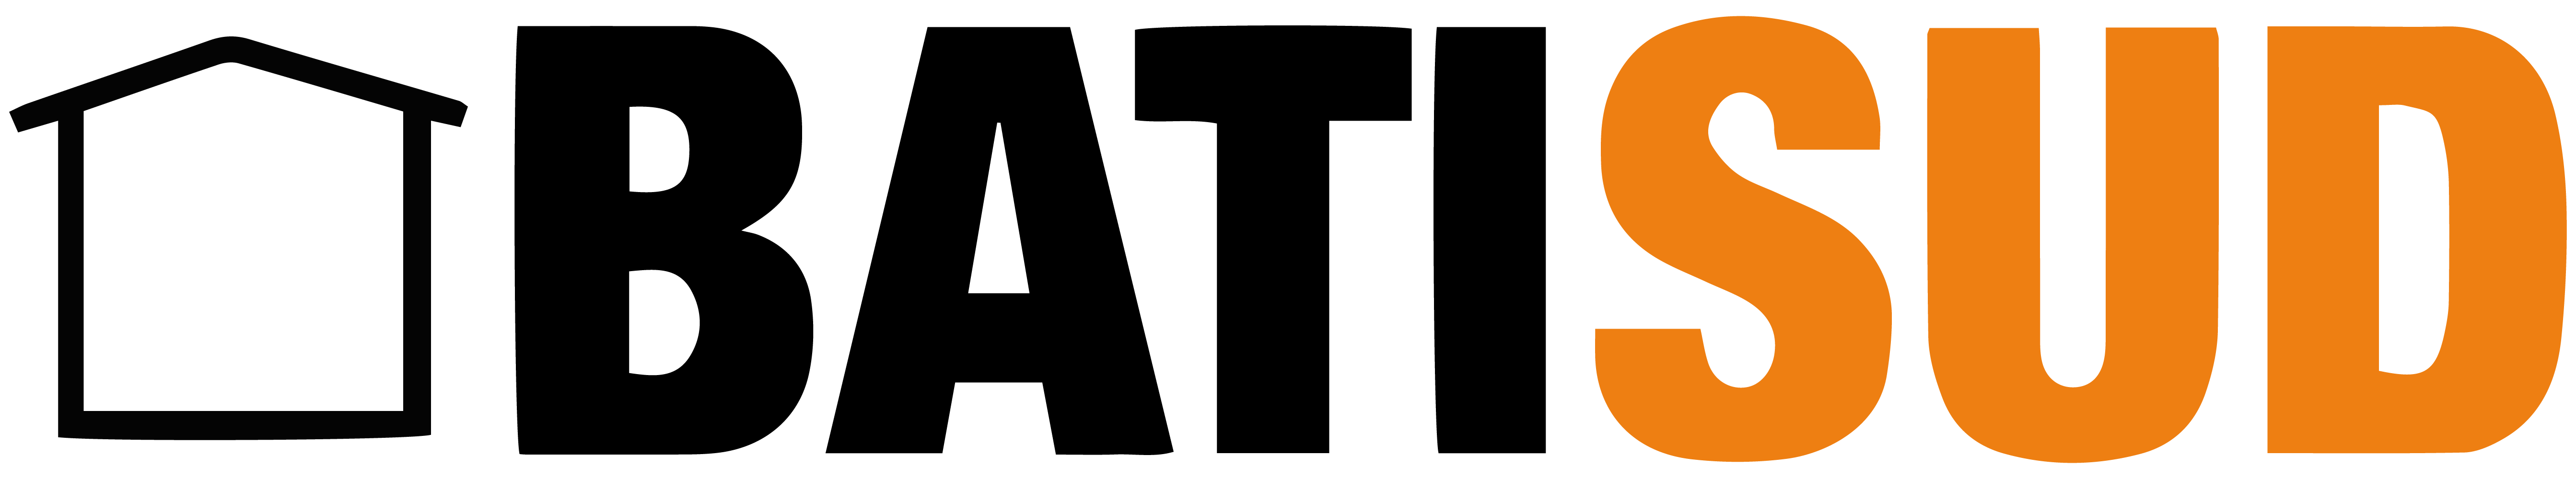 logo-BATISUD